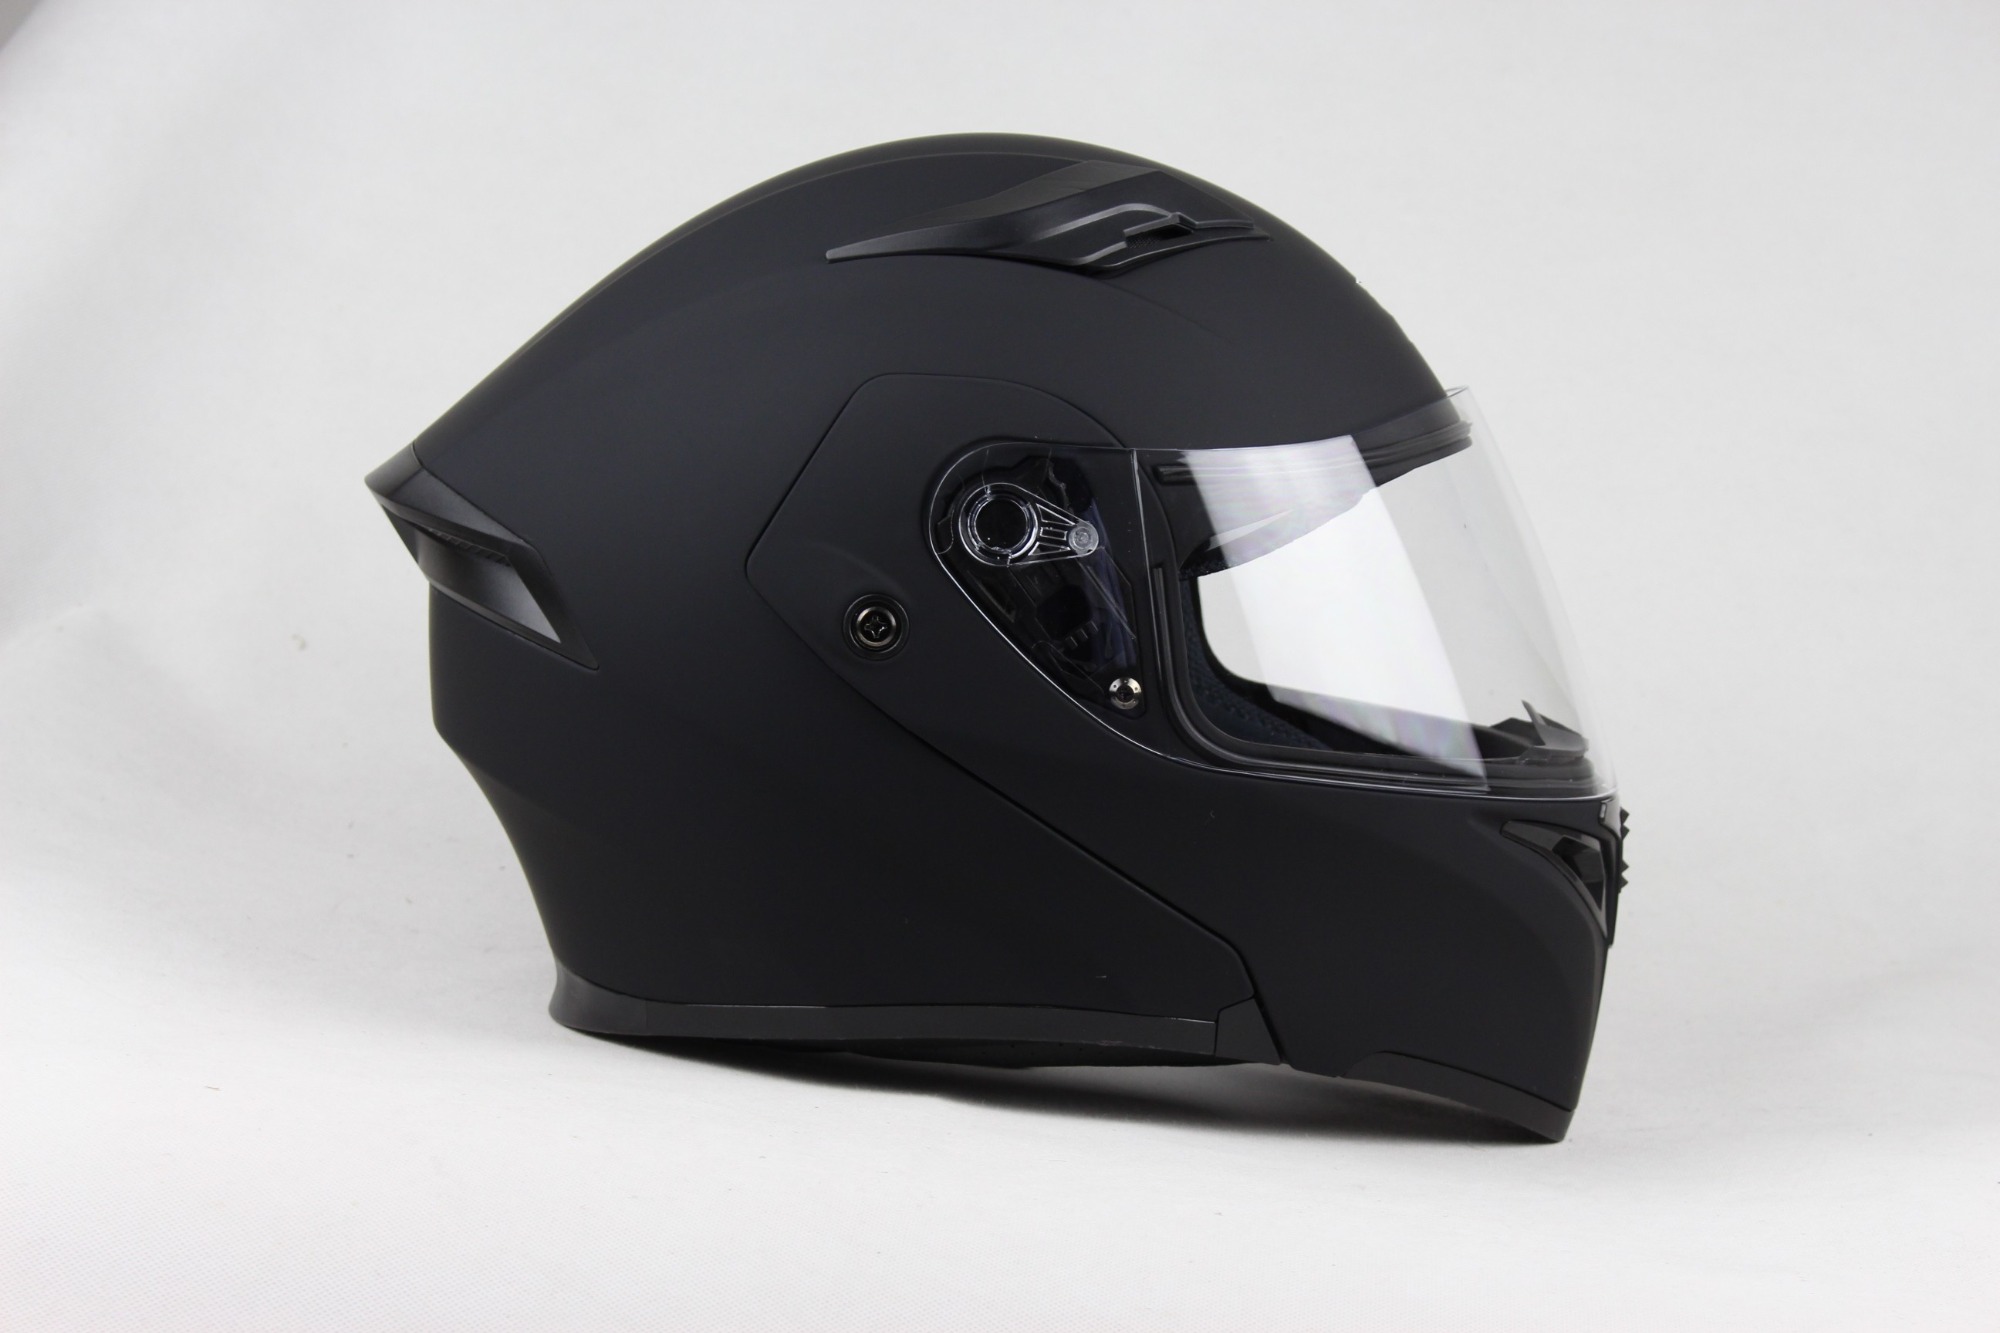 flip up helmet SH-7208